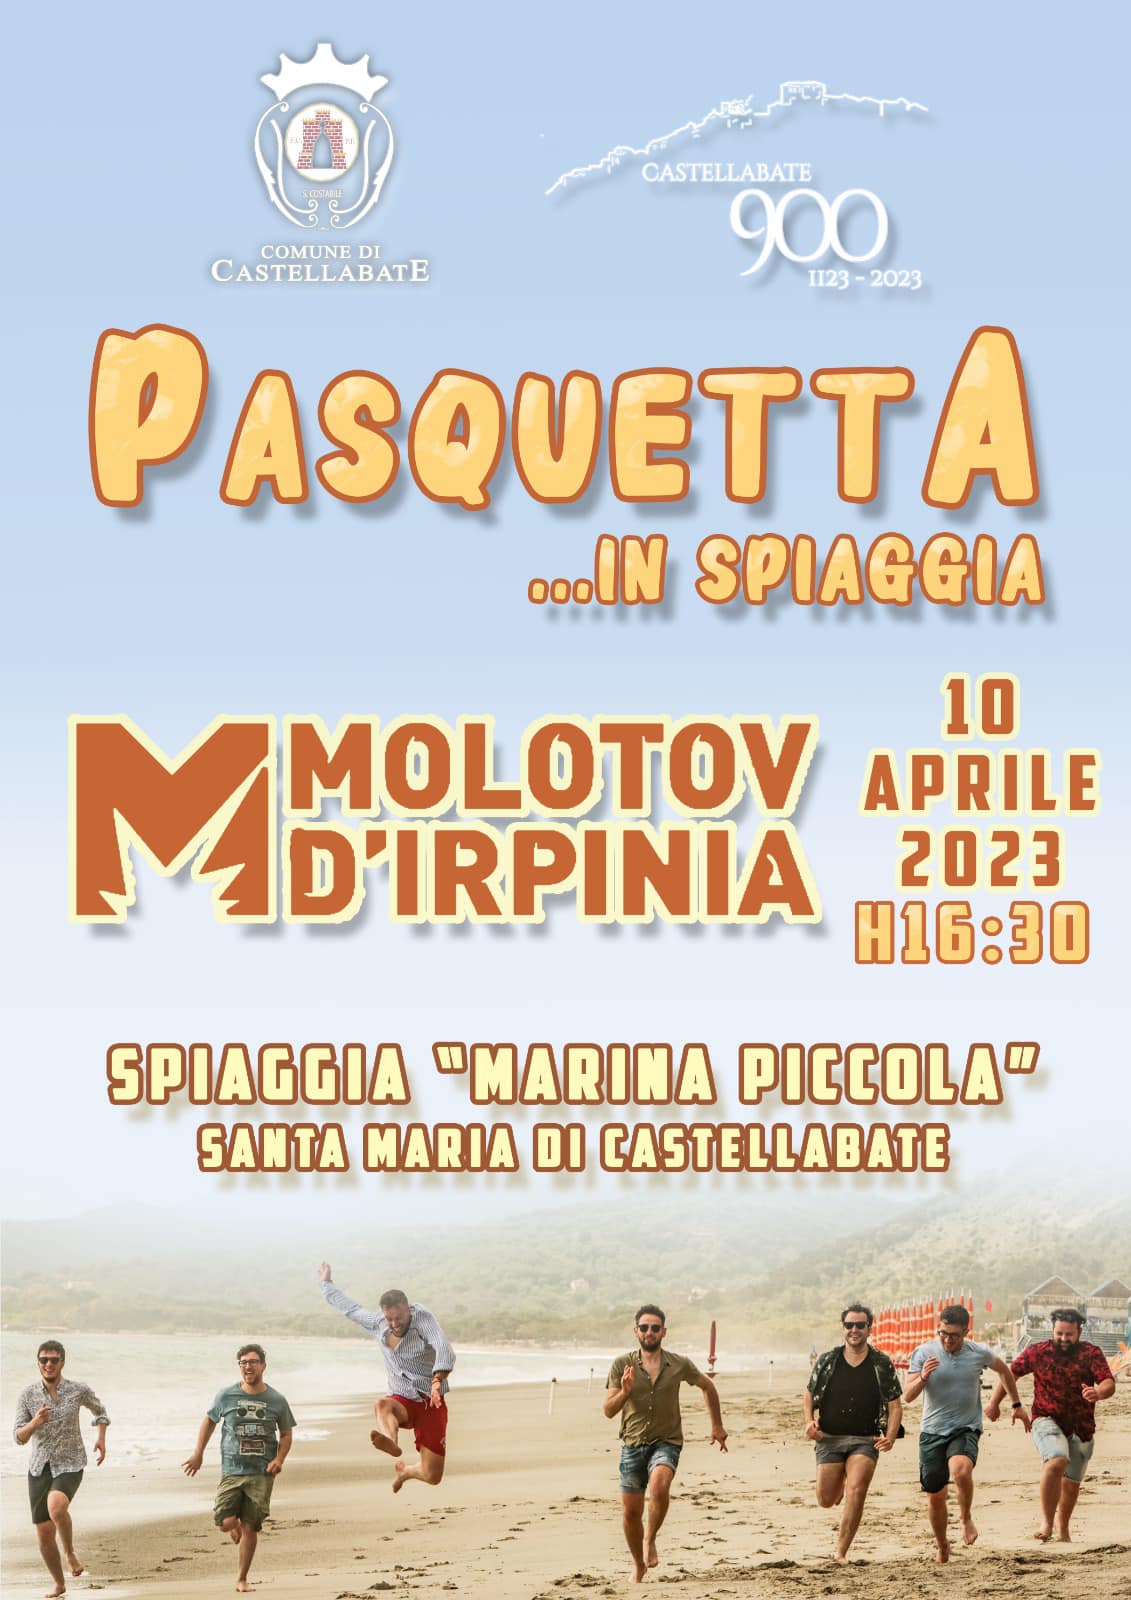 Castellabate: Pasquetta in spiaggia con molotov d’Irpinia